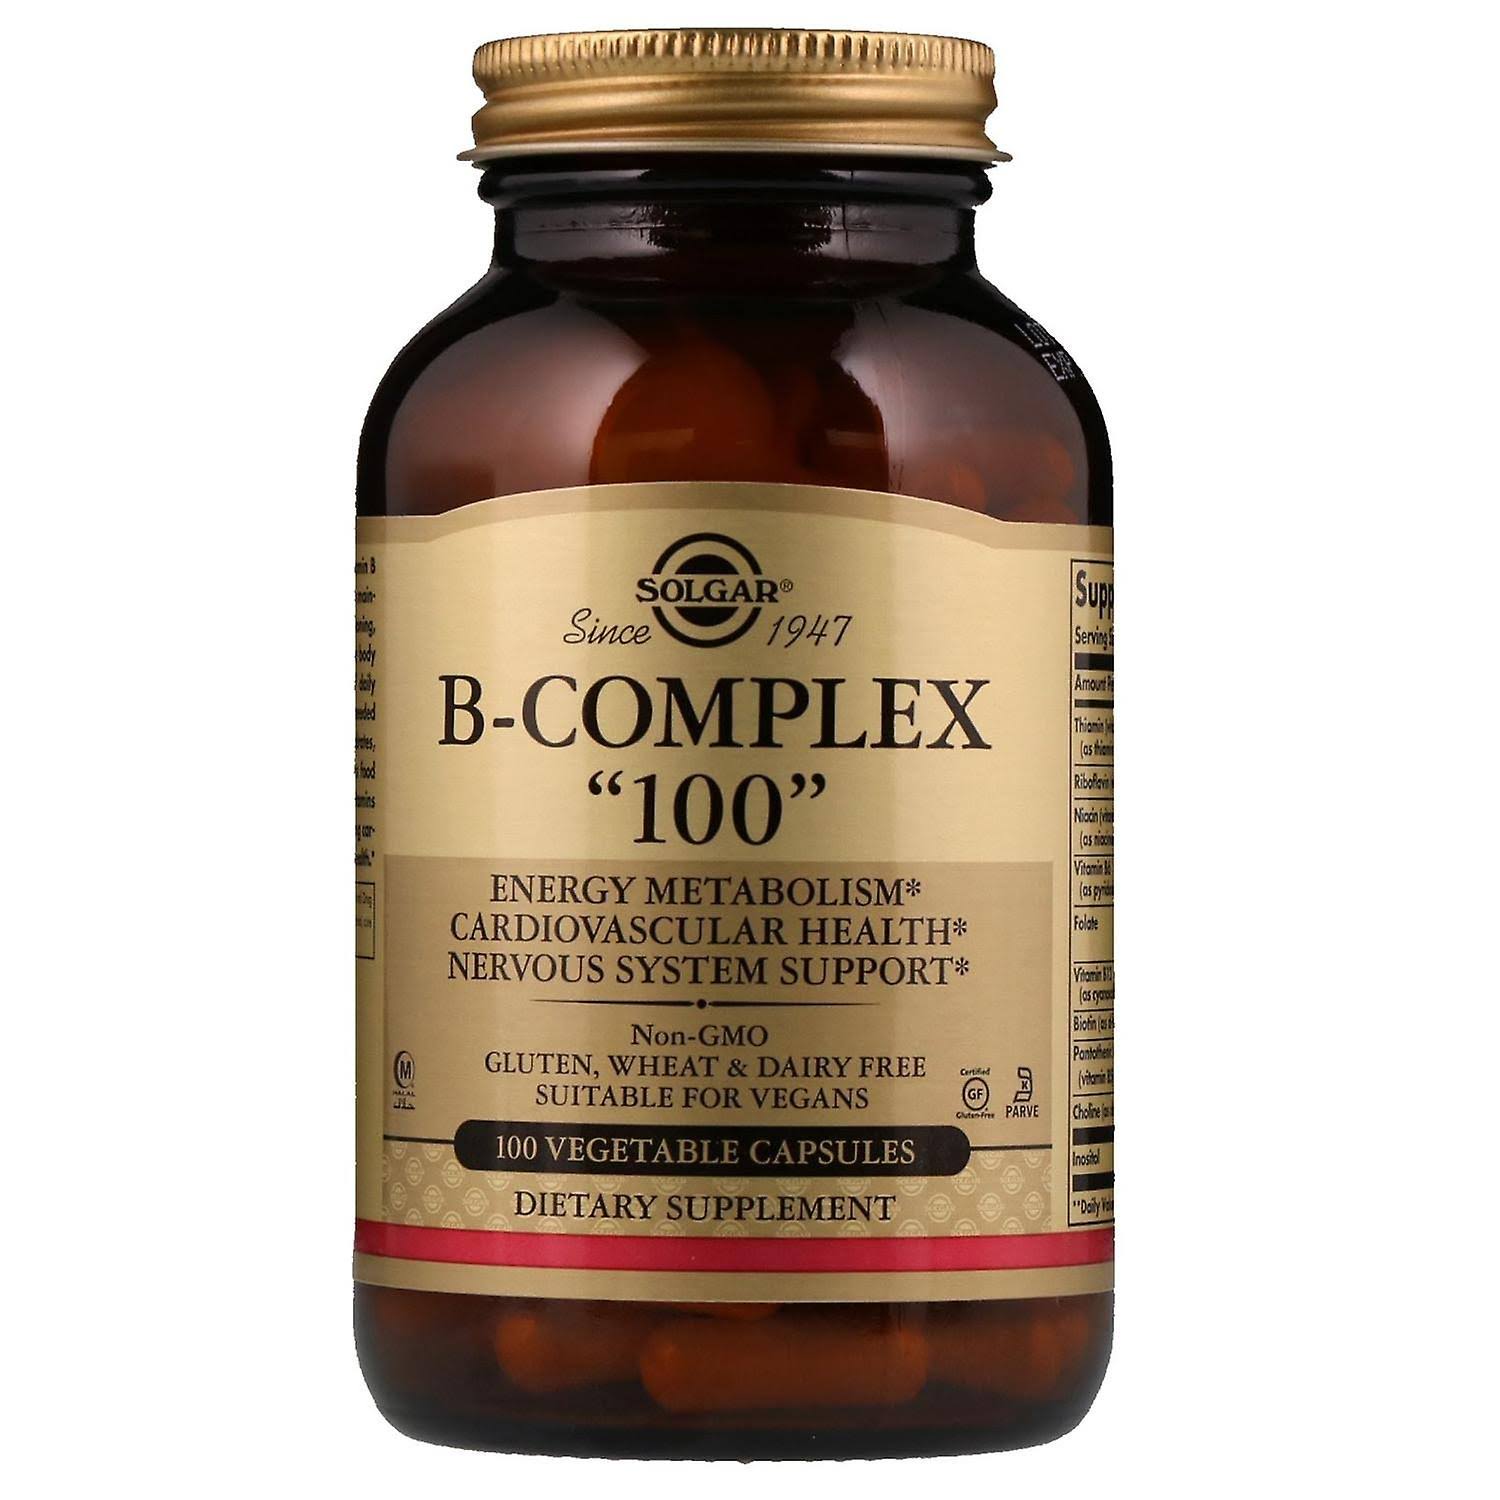 Solgar B-Complex “100” Dietary Supplement - 100 Capsules